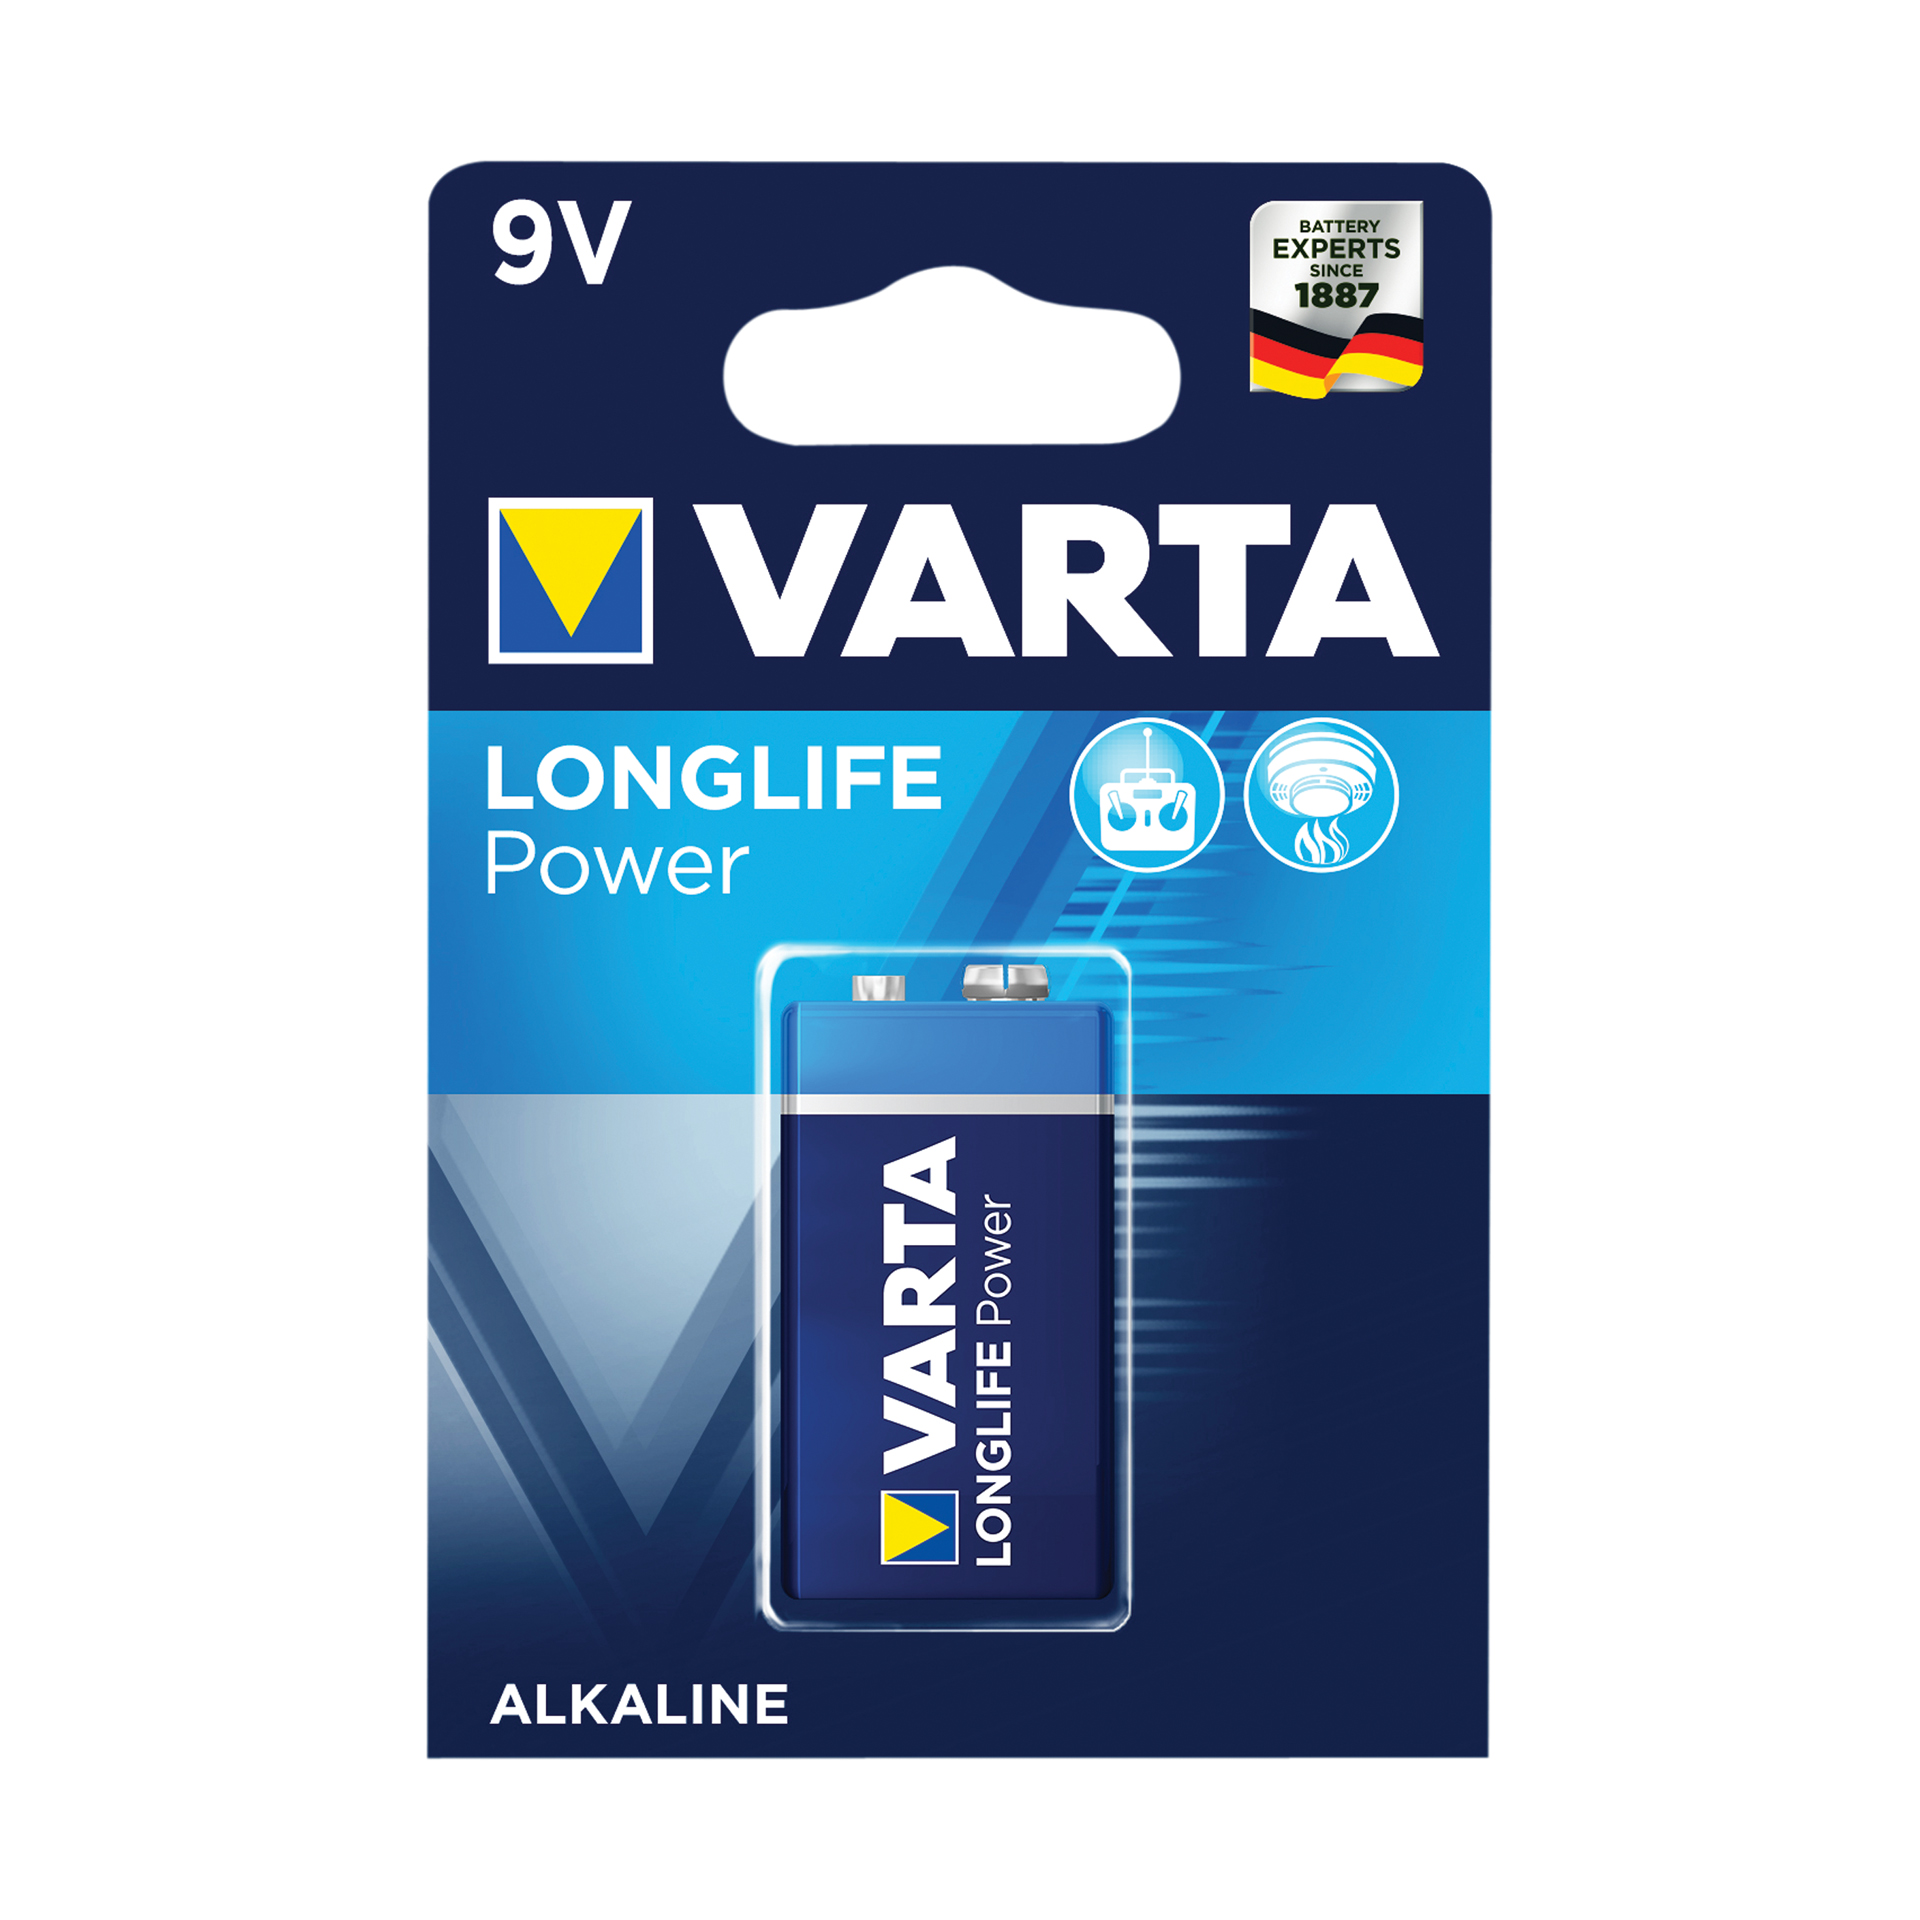 Varta Varta Batterij Longlife Power 6LR61 9V 0568044